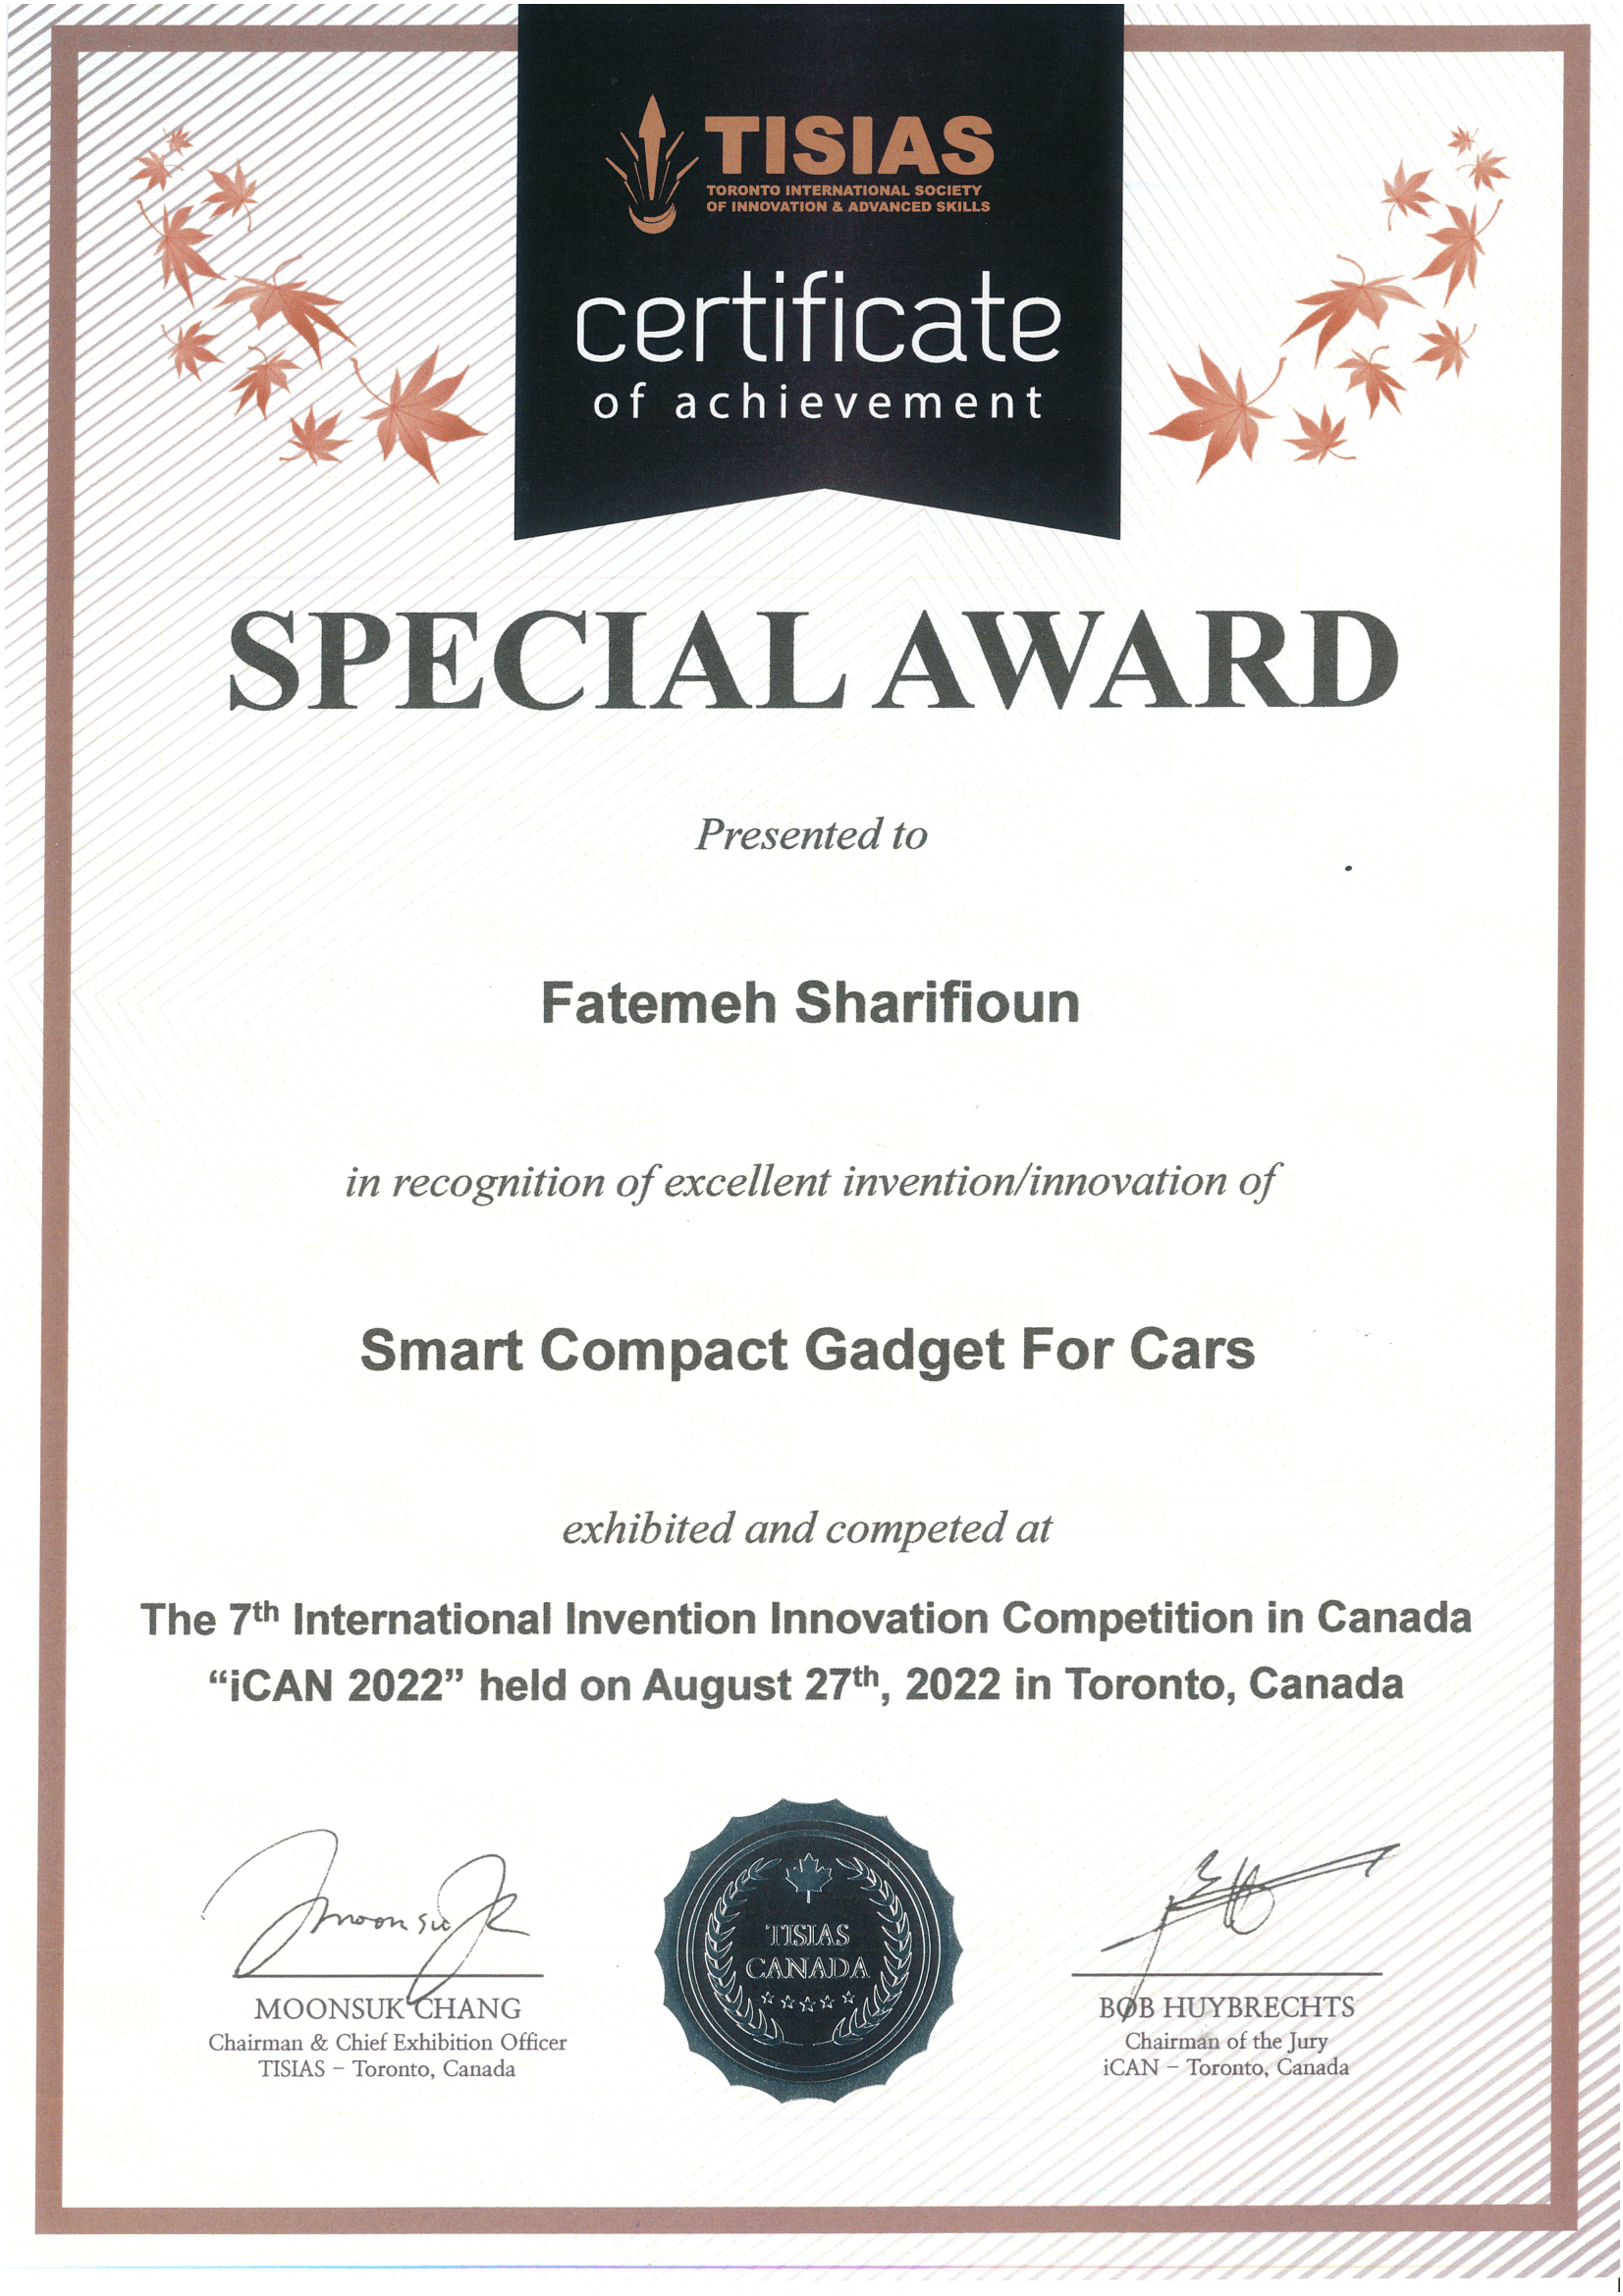 TISIAS Canada Certificate-1